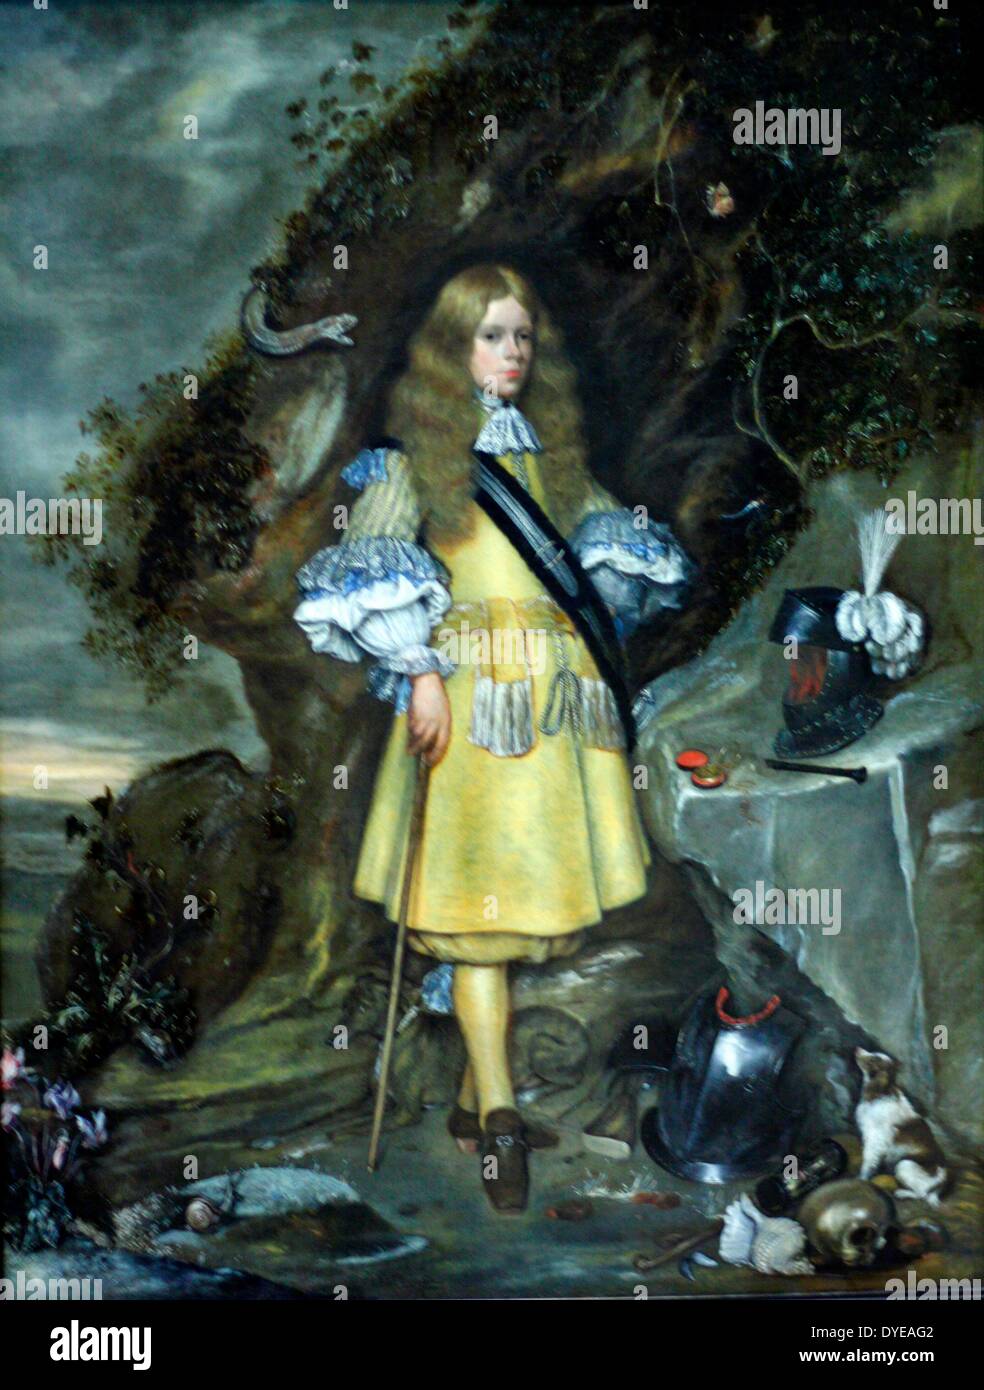 Memorial Portrait von Mose Ter Borch. Gerard Ter Borch (1617-1681) und Gesina Ter Borch (1633-1690), Öl auf Leinwand, 1667-1669. Die beiden Maler produziert dieses Portrait ihr jüngster Bruder, Moses, der im Jahre 1645 geboren wurde, zu gedenken. Mose starb im Jahre 1667 bei der Erstürmung der Festung Languard in der Nähe von Felixstowe in England. Er hatte in der niederländischen Marine gegen die Engländer seit 1664 serviert. In der Malerei Moses durch Symbole, dass Hinweise auf seine militärischen Lebens umgeben ist: Zeit (die Taschenuhr), Tod (Schädel), der ewigkeit (The Ivy auf den Felsen) und Loyalität (die Hunde). Stockfoto